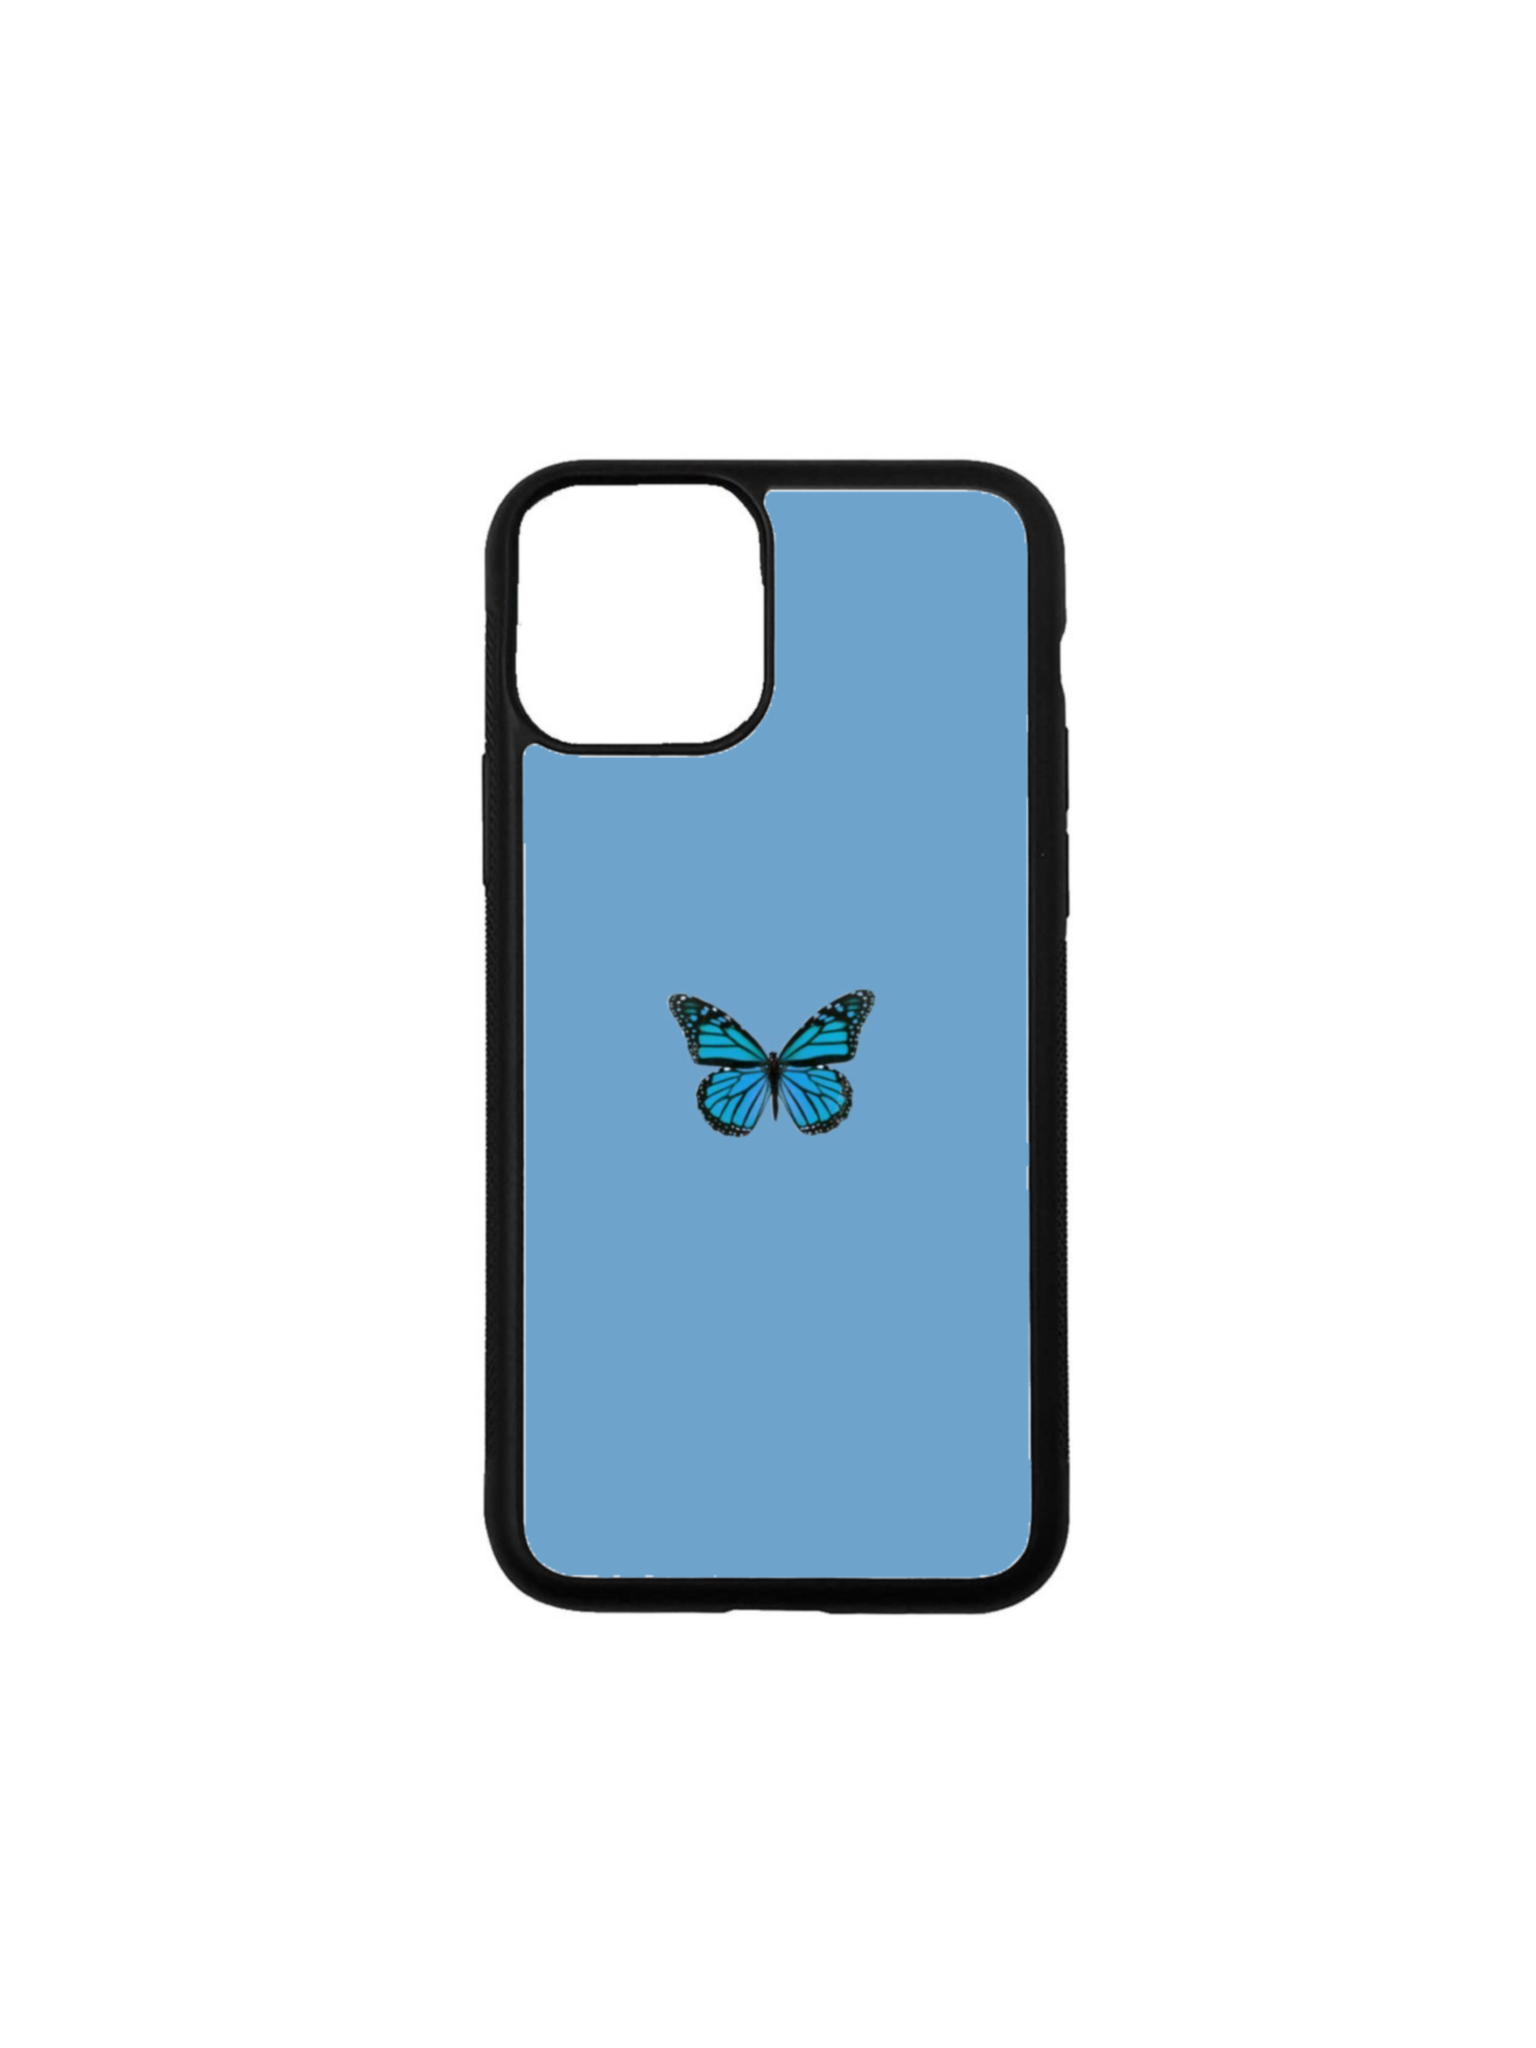 Singular blue butterfly case